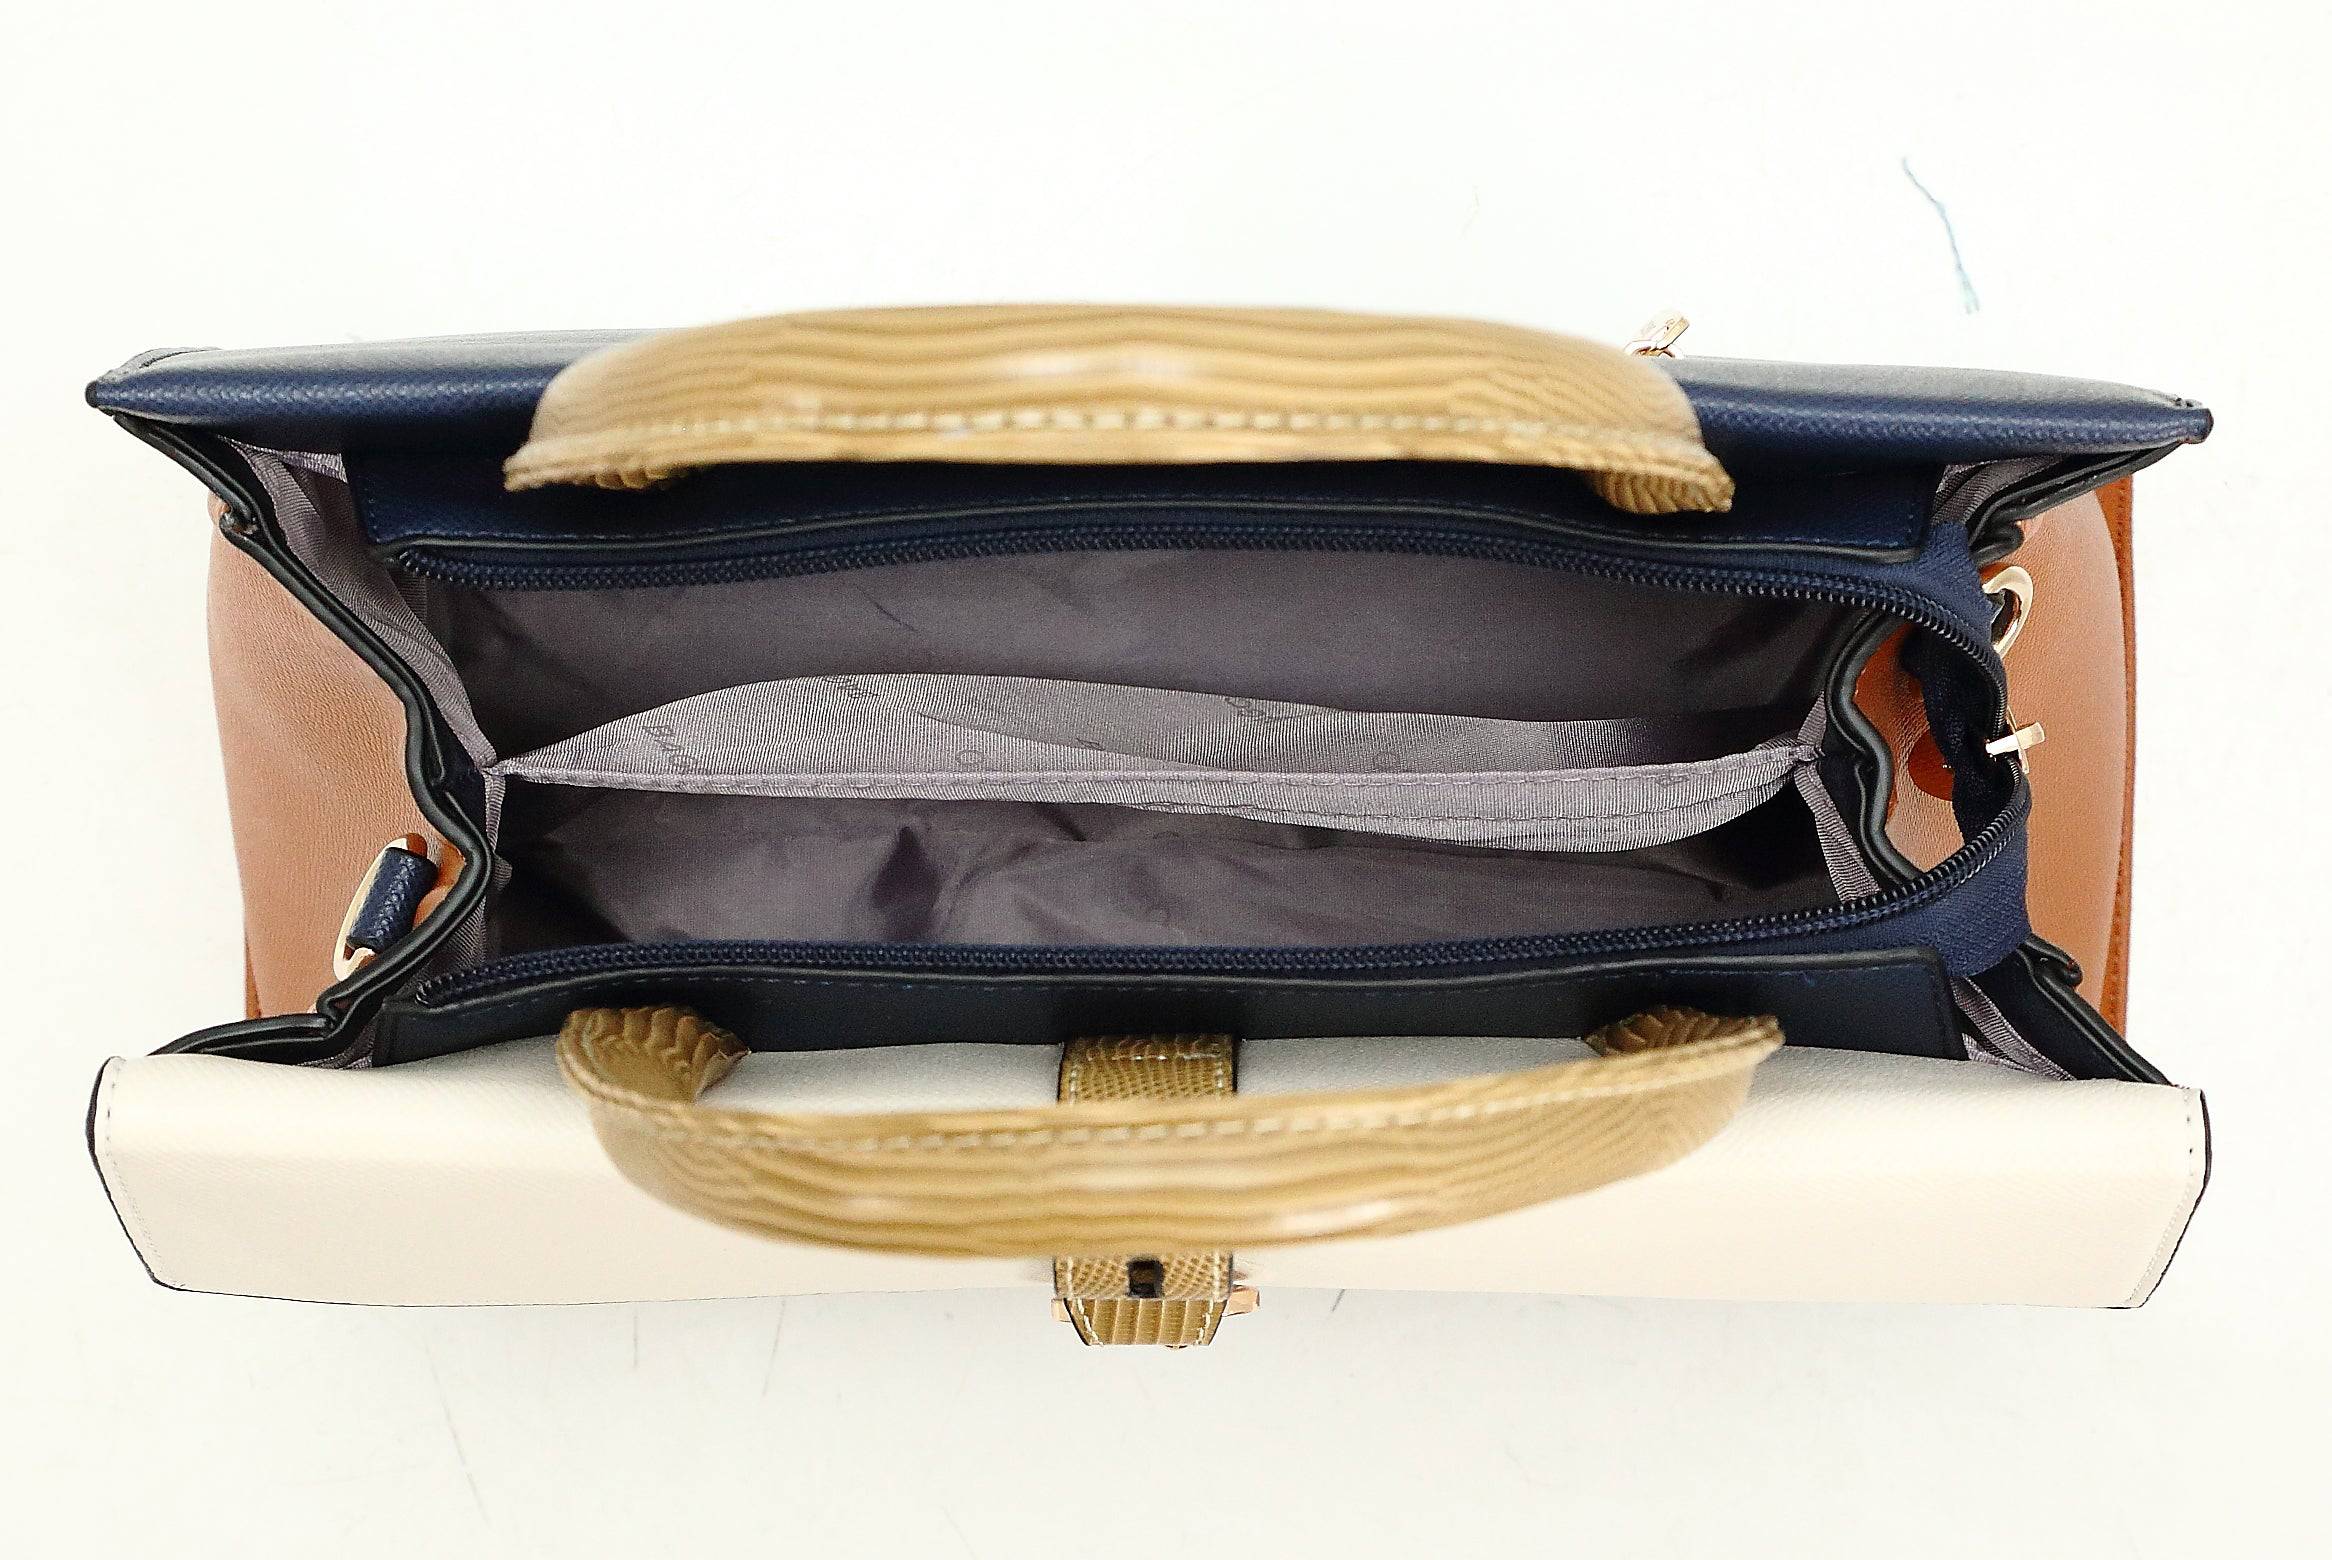 حقيبة يد نسائية متوسطة الحجم تجمع بين أكثر من لون تناسب المرأة العصرية التي تبحث عن كل جديد. - KSA